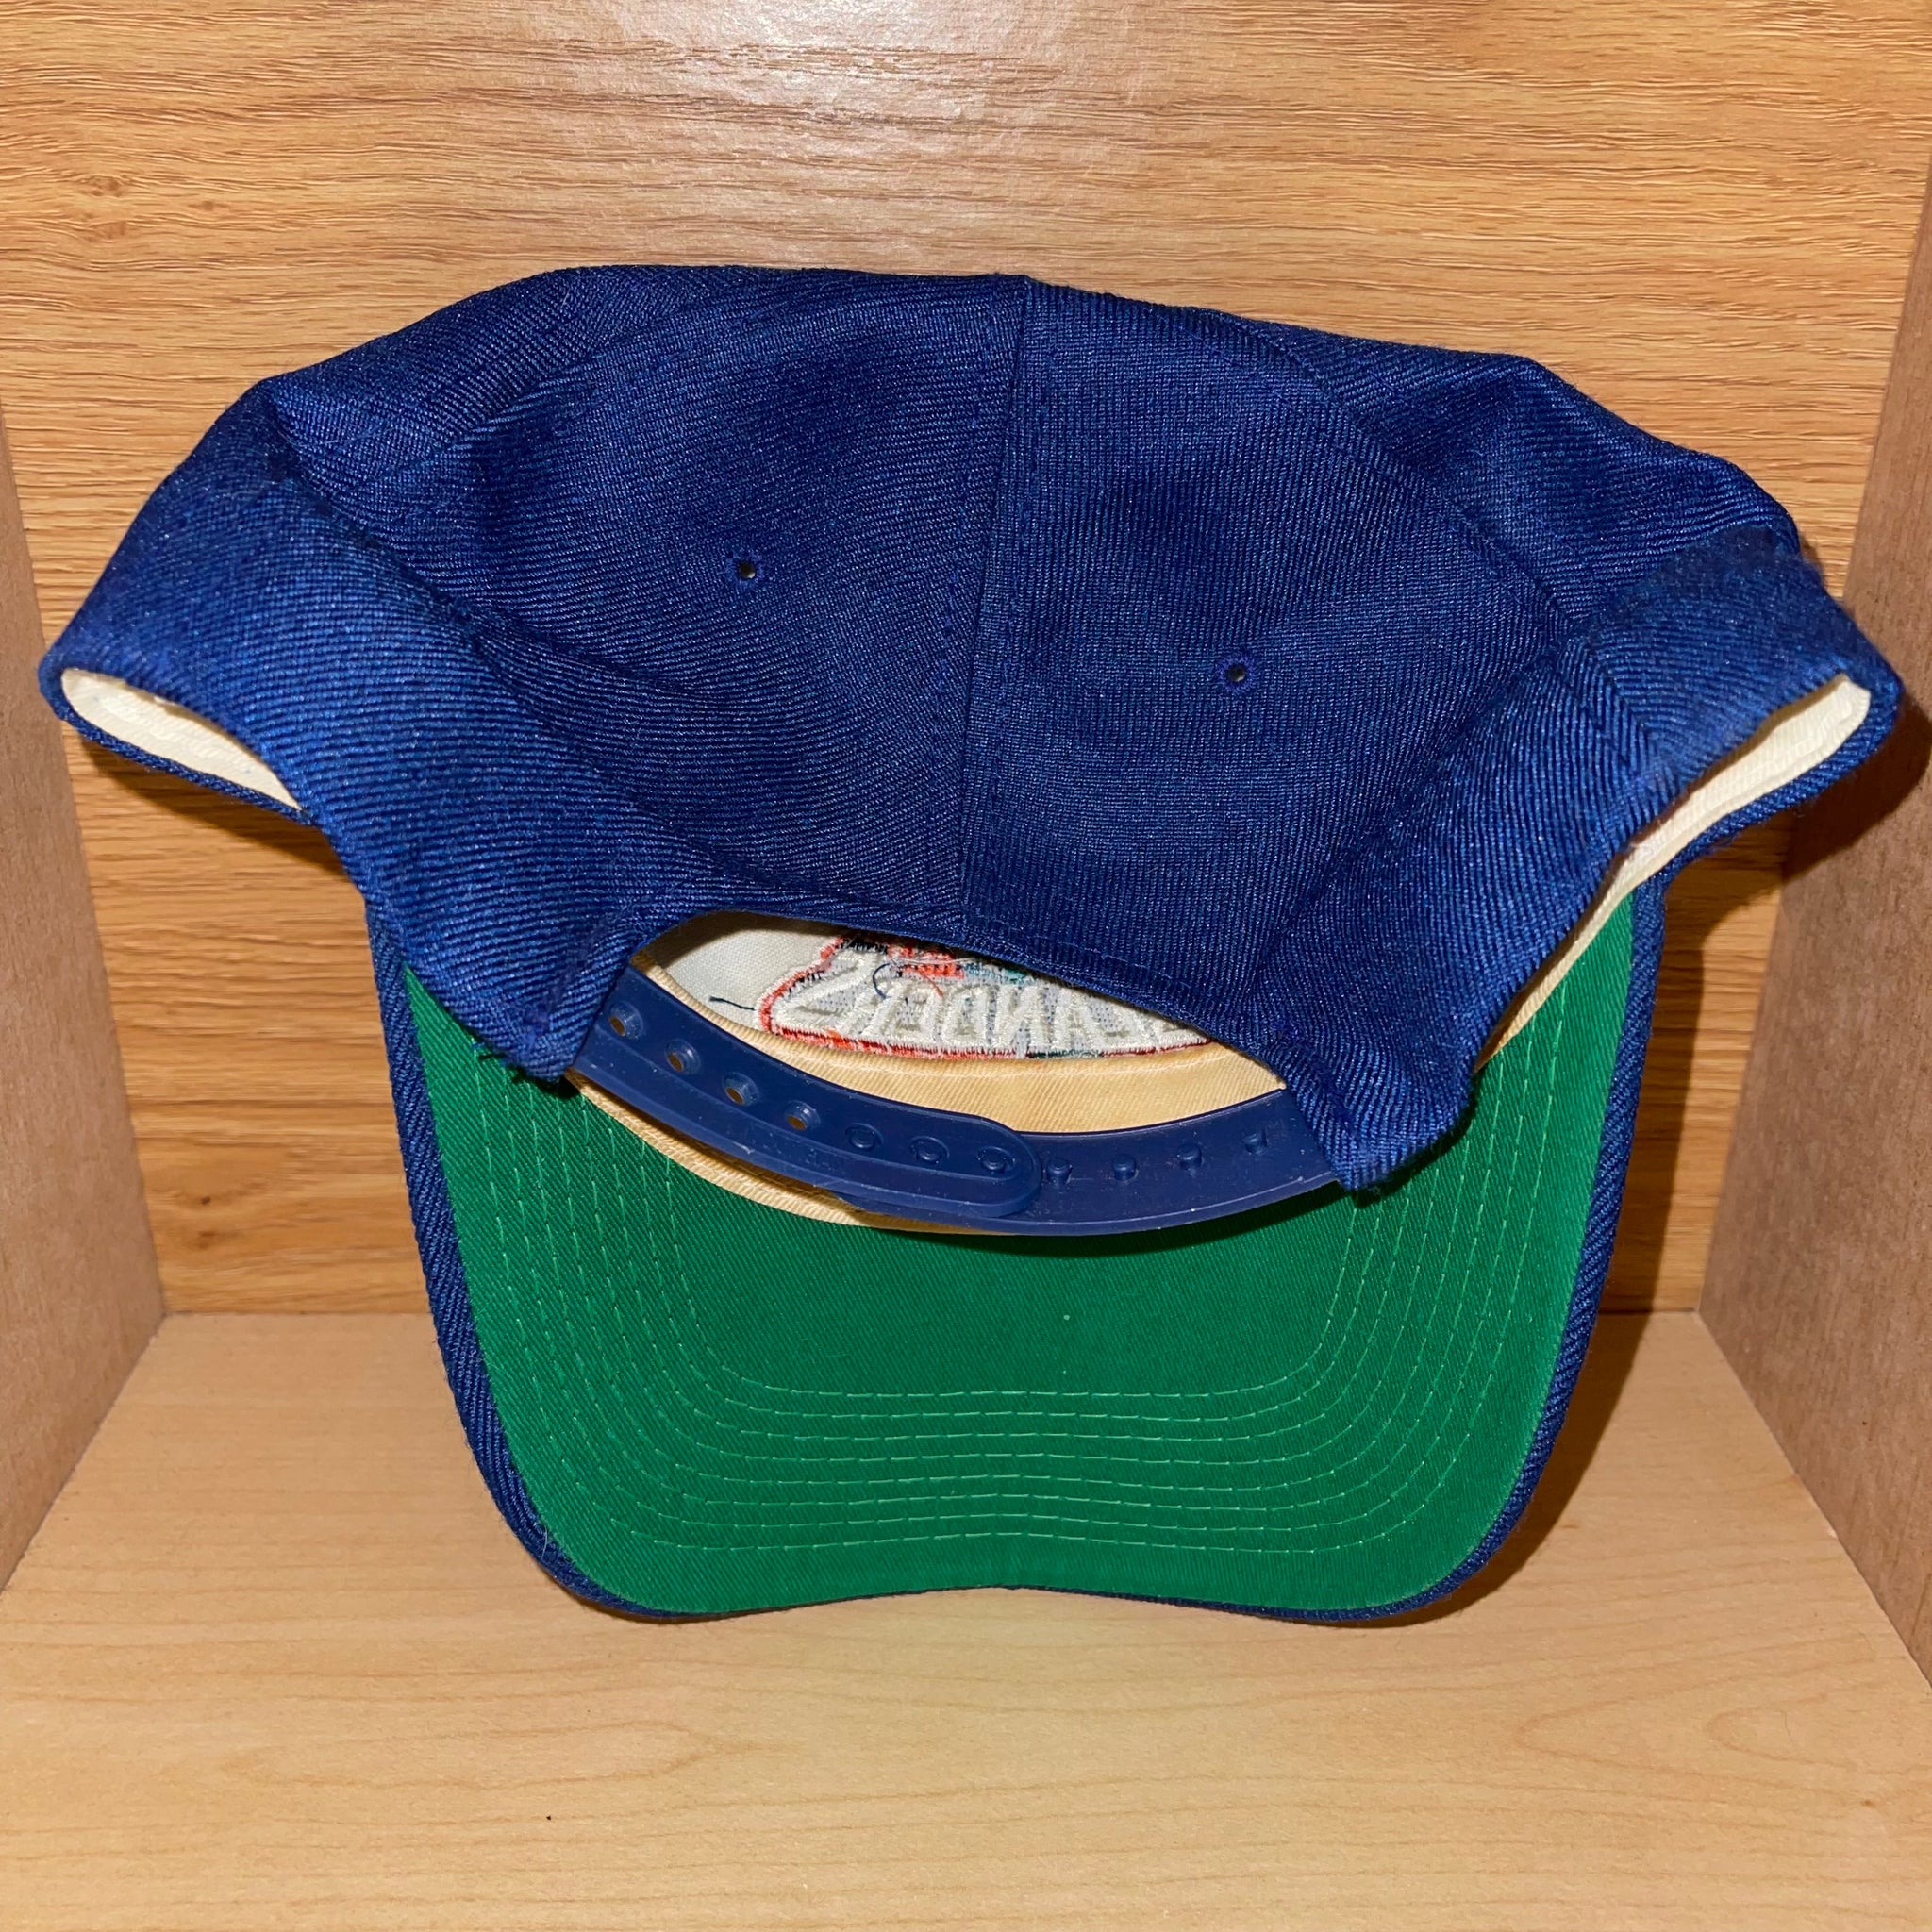 New York Islanders Hat - Vintage Islanders Hat | New York Islanders Gift |  Vintage New York Hat | Retro Islanders Hat | New York Snapback